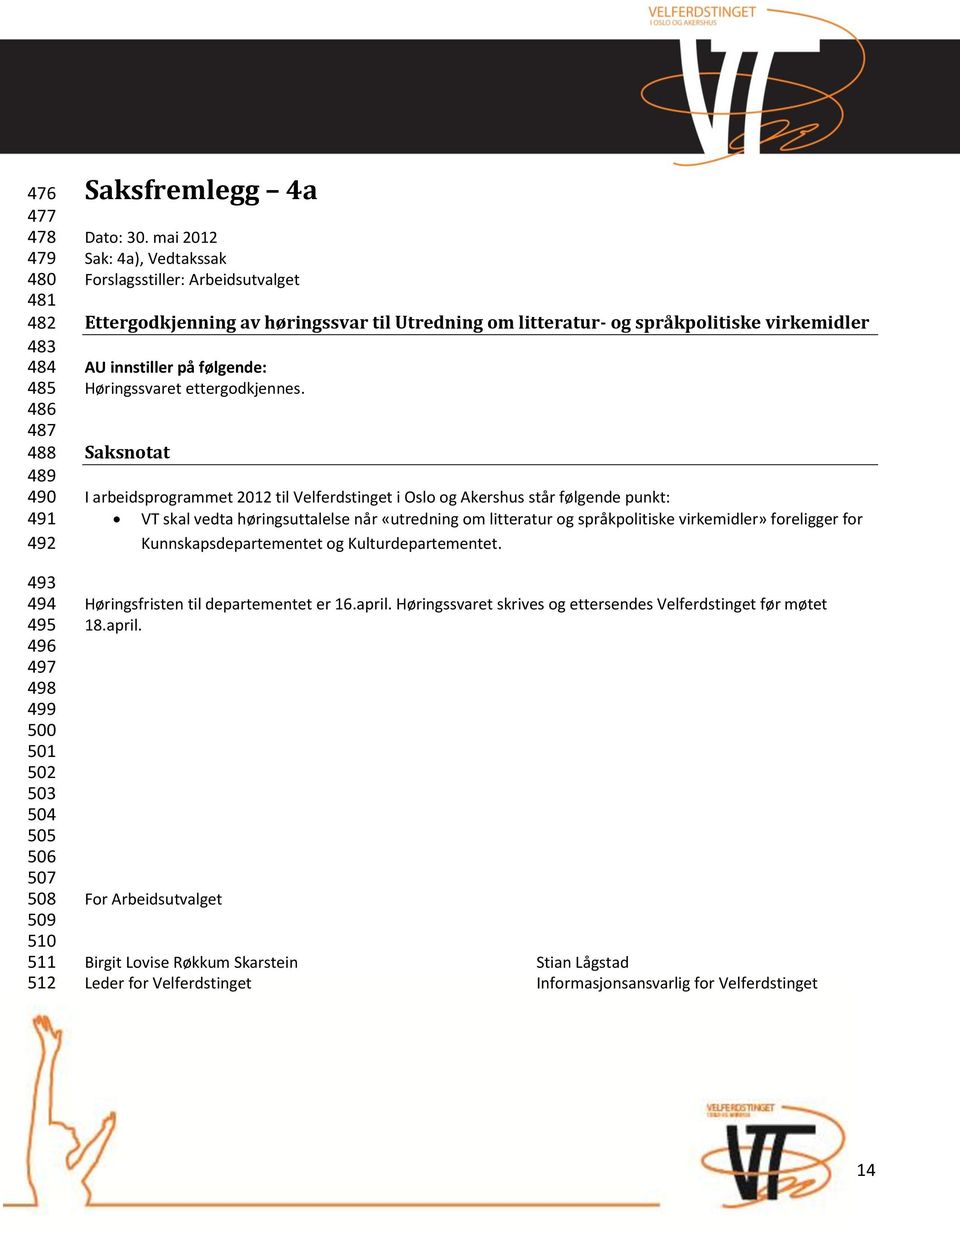 Saksnotat I arbeidsprogrammet 2012 til Velferdstinget i Oslo og Akershus står følgende punkt: VT skal vedta høringsuttalelse når «utredning om litteratur og språkpolitiske virkemidler» foreligger for